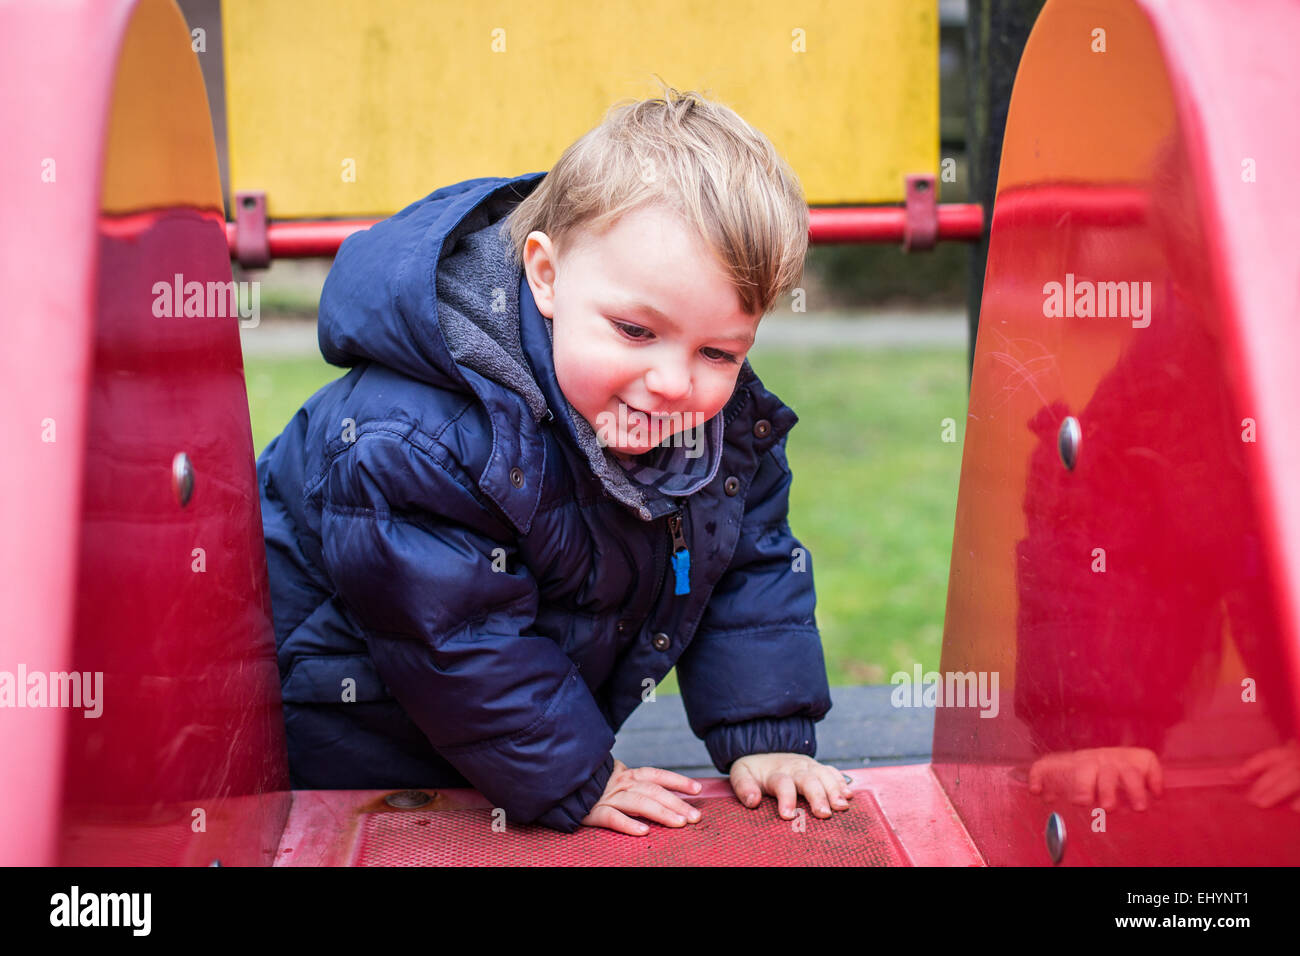 Bébé garçon escalade sur une diapositive Banque D'Images